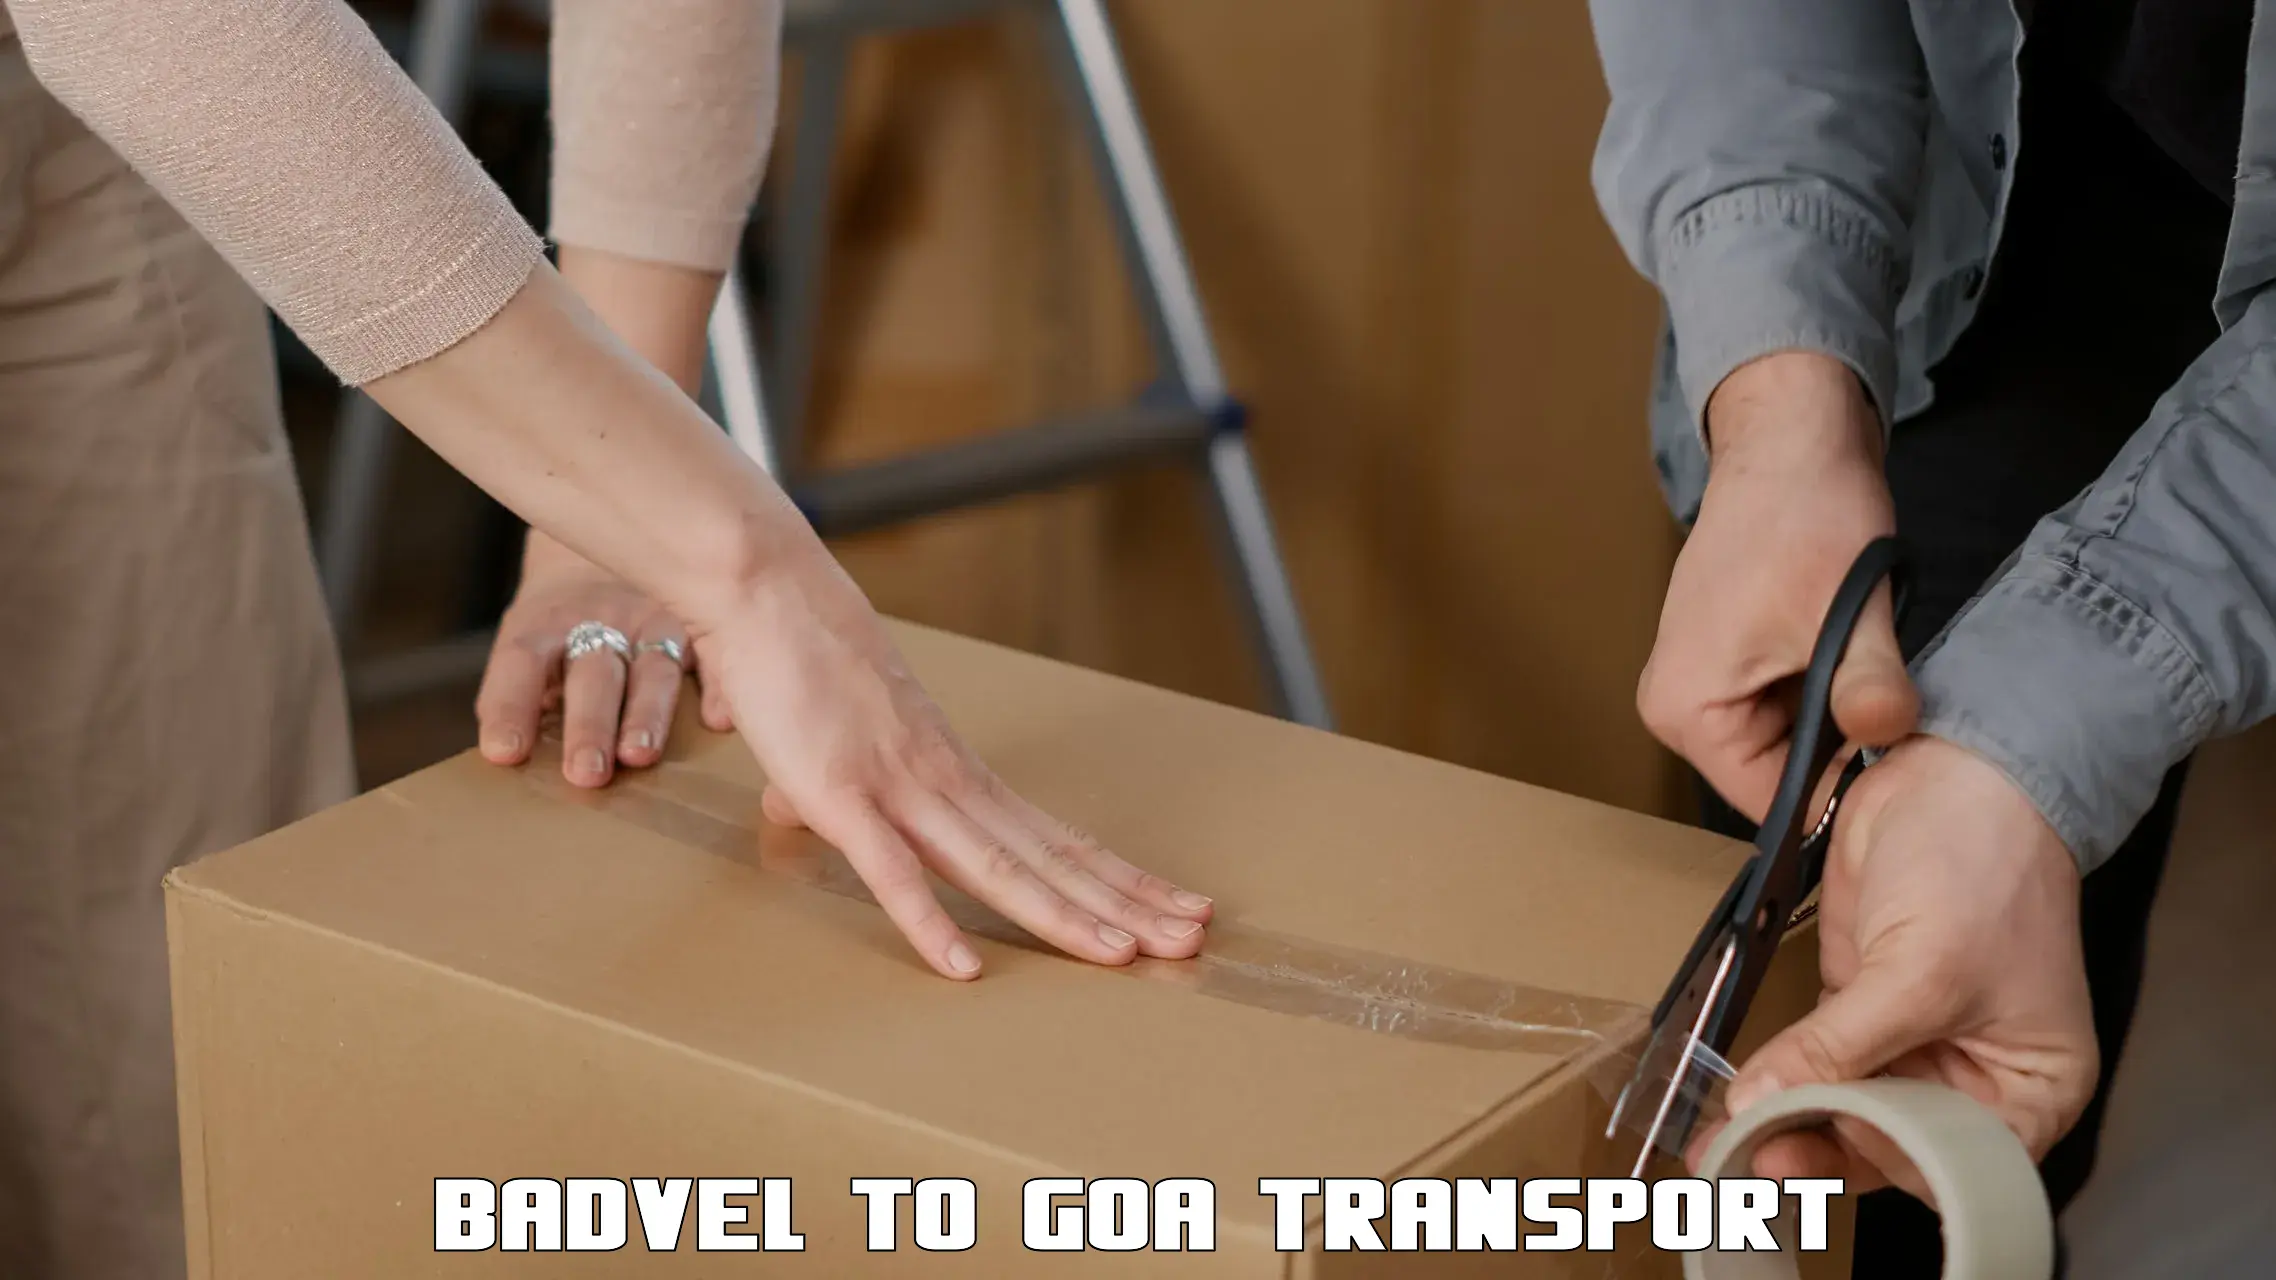 Two wheeler parcel service Badvel to Goa